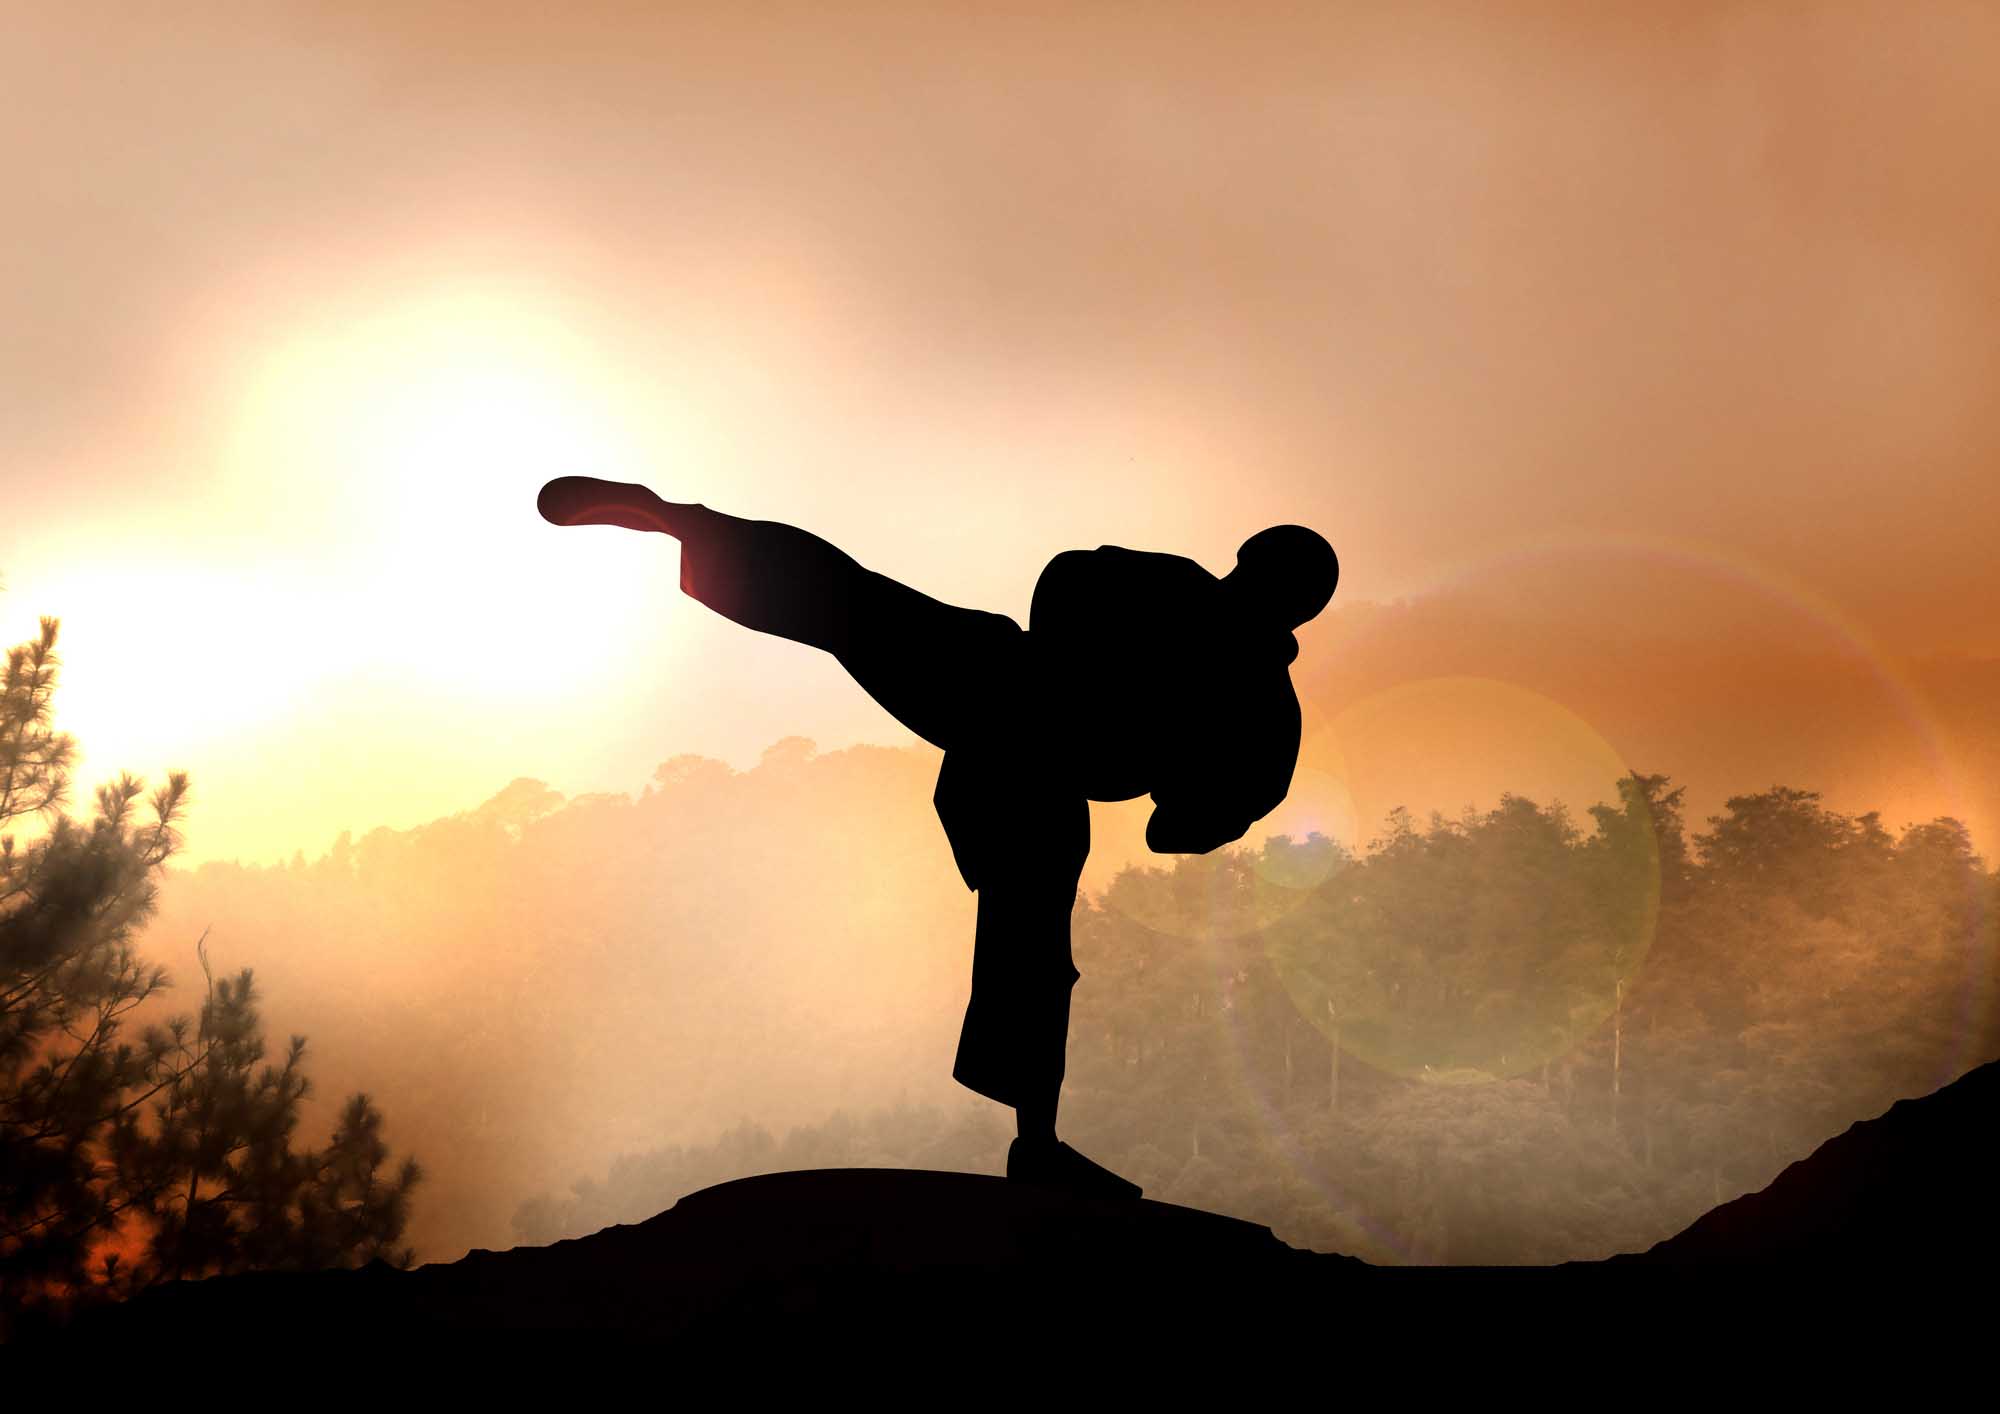 Cobra Kai: La historia de "Karate Kid" continúa en Netflix